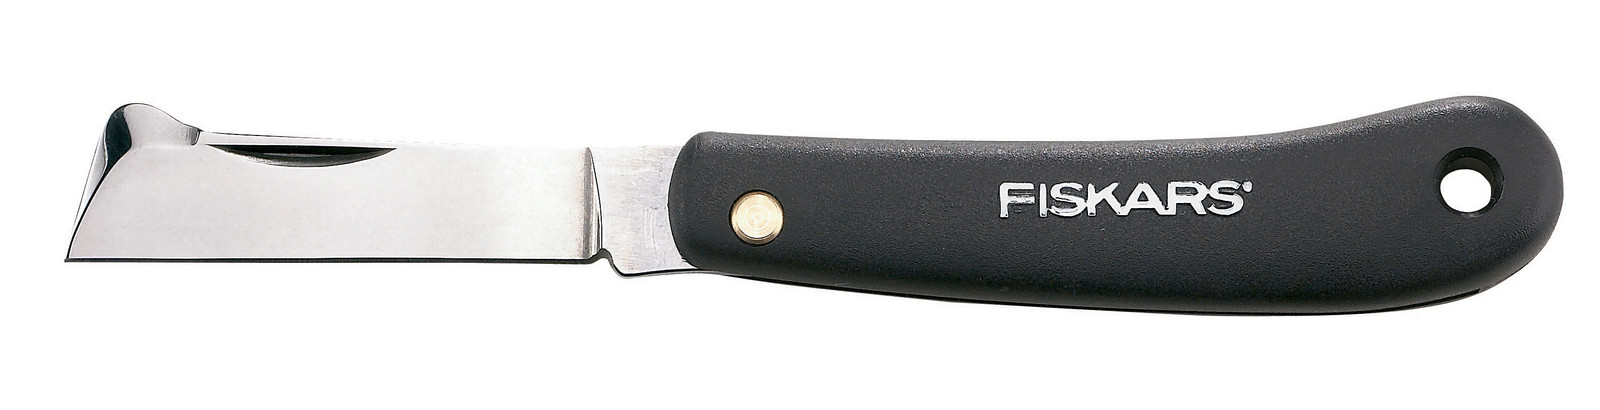 Цена нож складной Fiskars 1001625 в Житомире